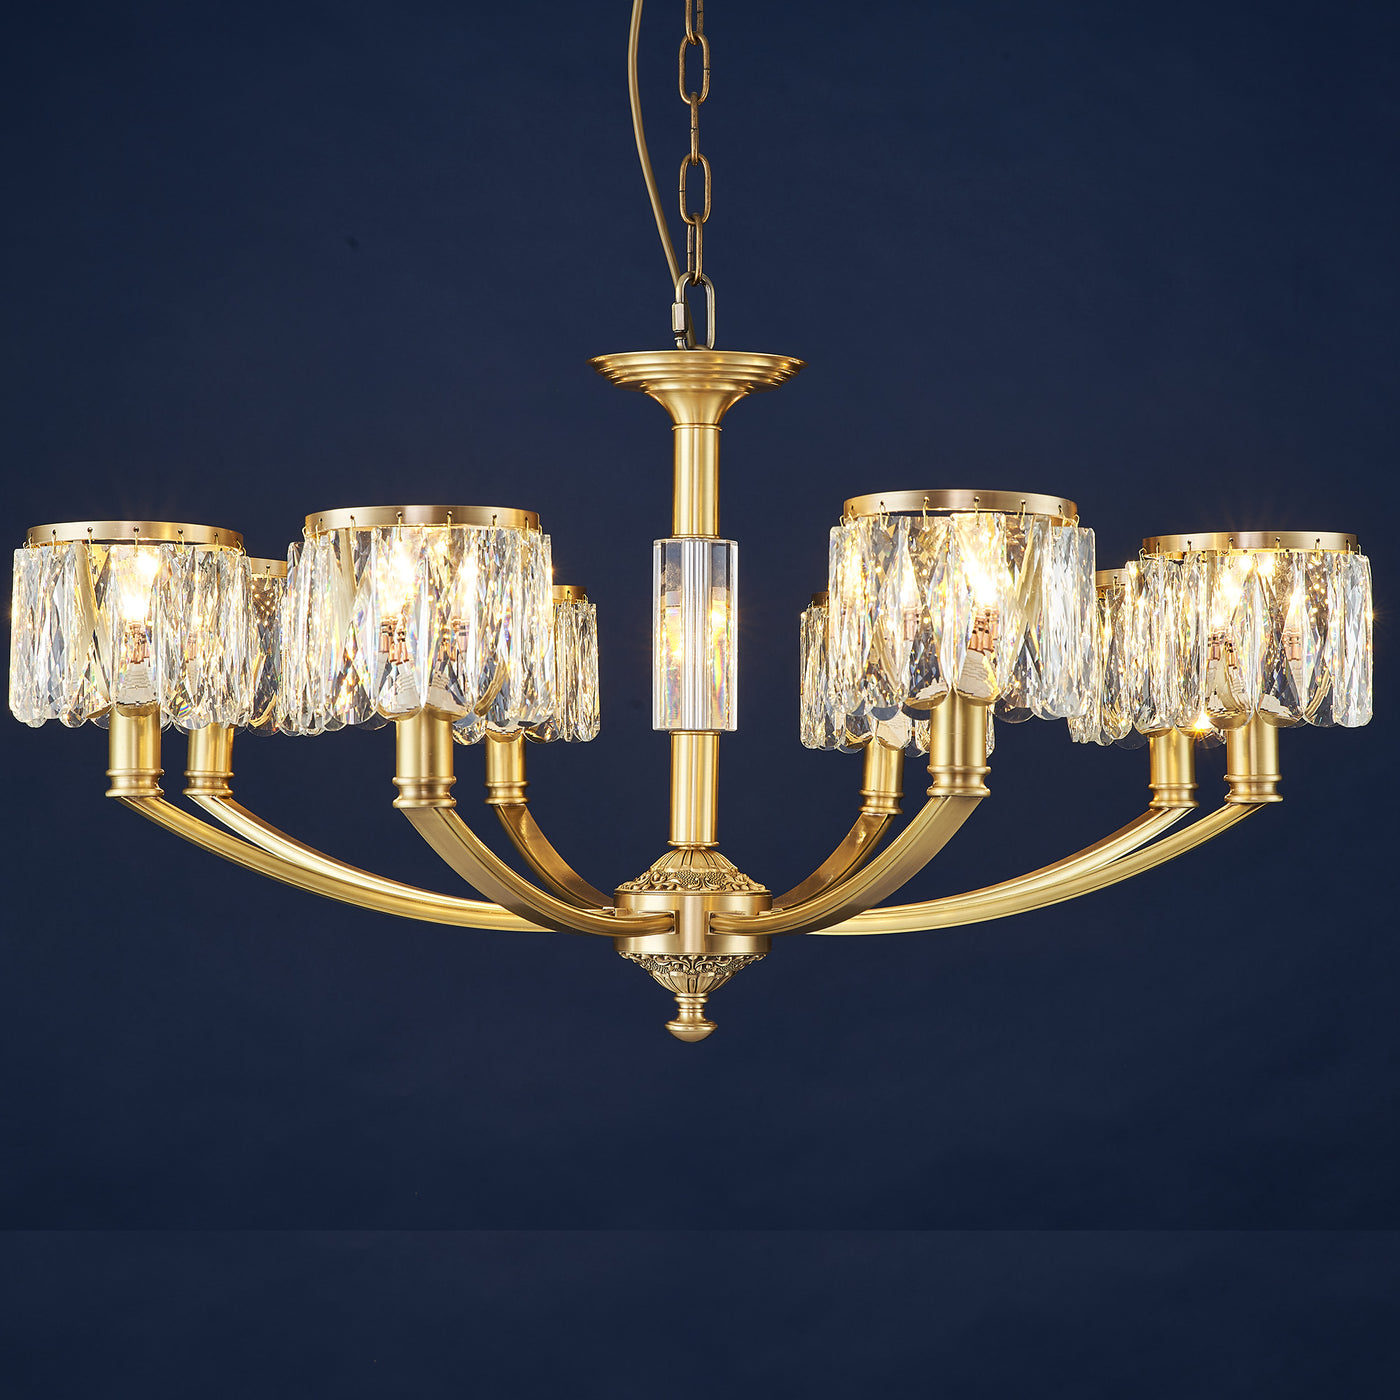 Light luxury all copper chandelier